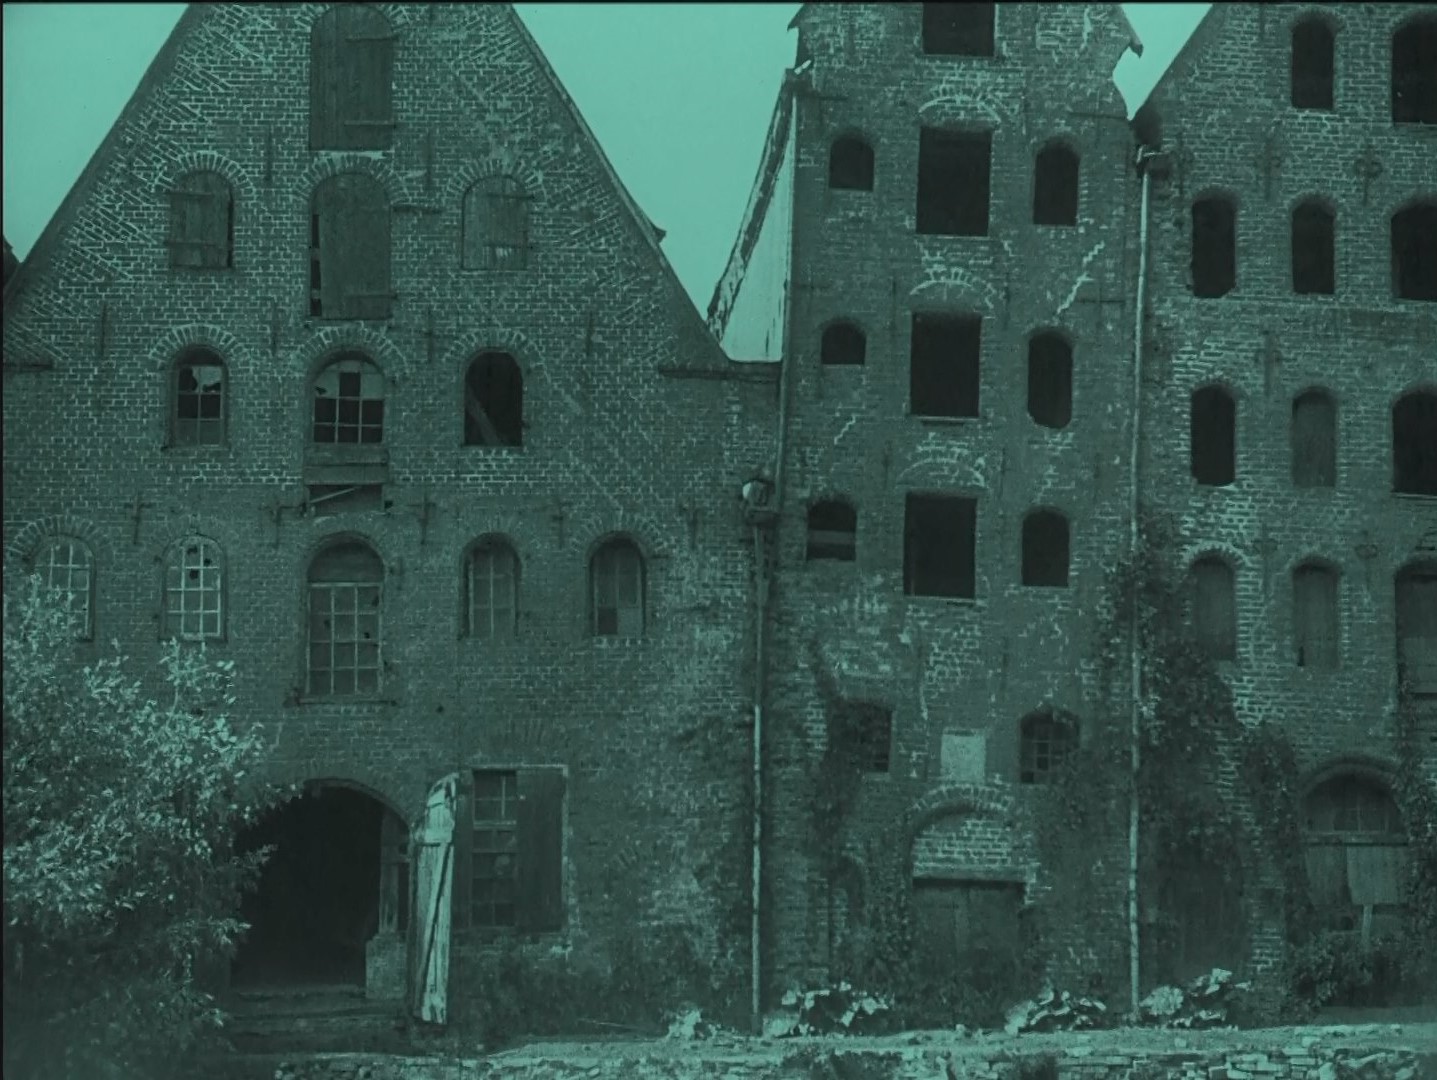 Image du film Nosferatu Eine Symphonie des Grauens (Nosferatu, une symphonie de l'horreur, 1922) de Friedrich Wilhelm Murnau